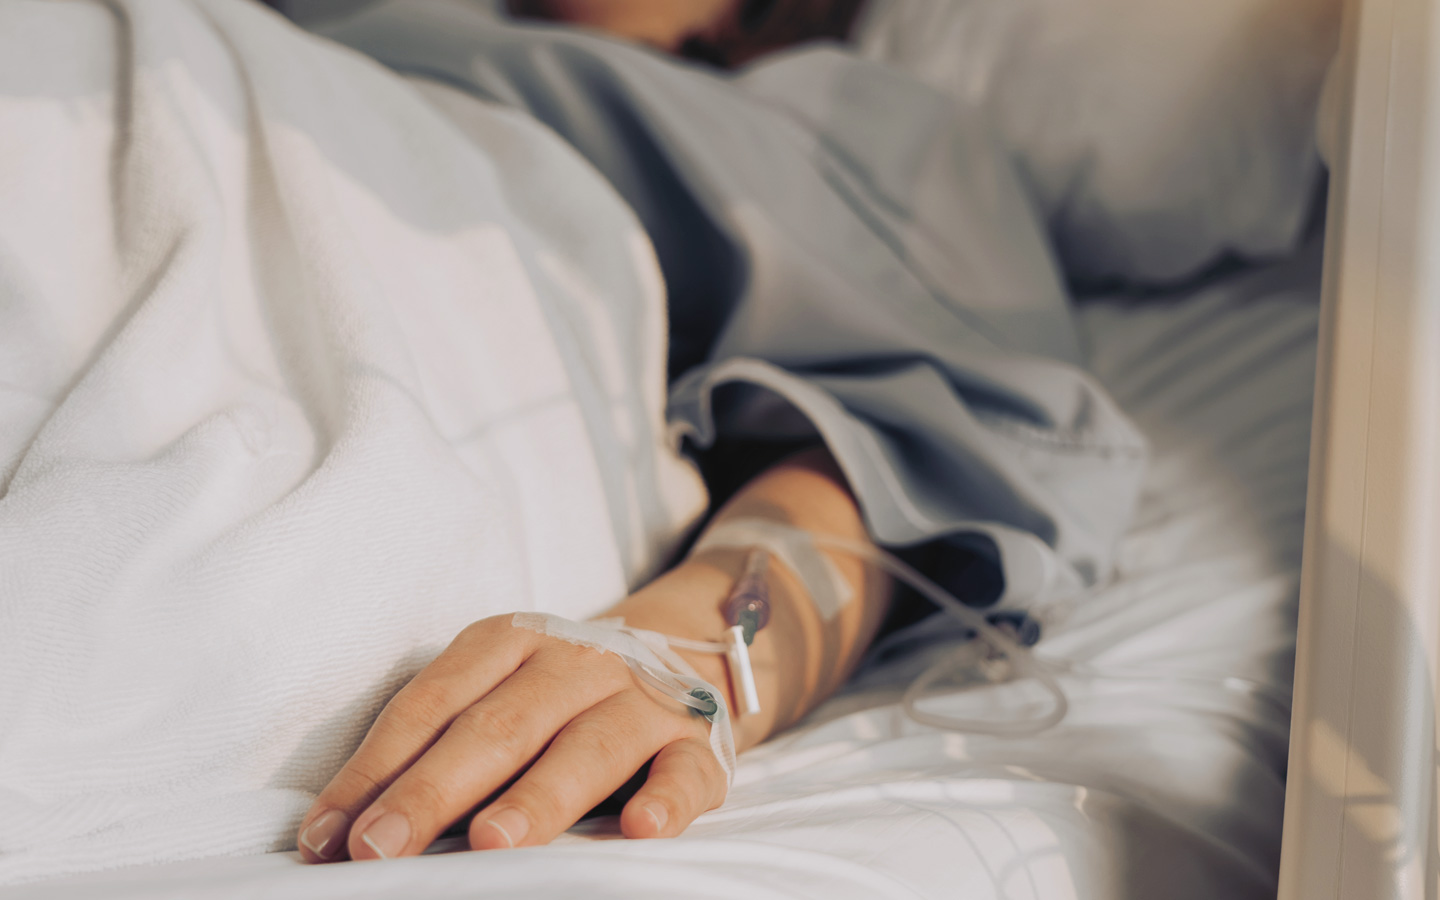 Foto: Hand im Krankenhausbett mit einer Infusion